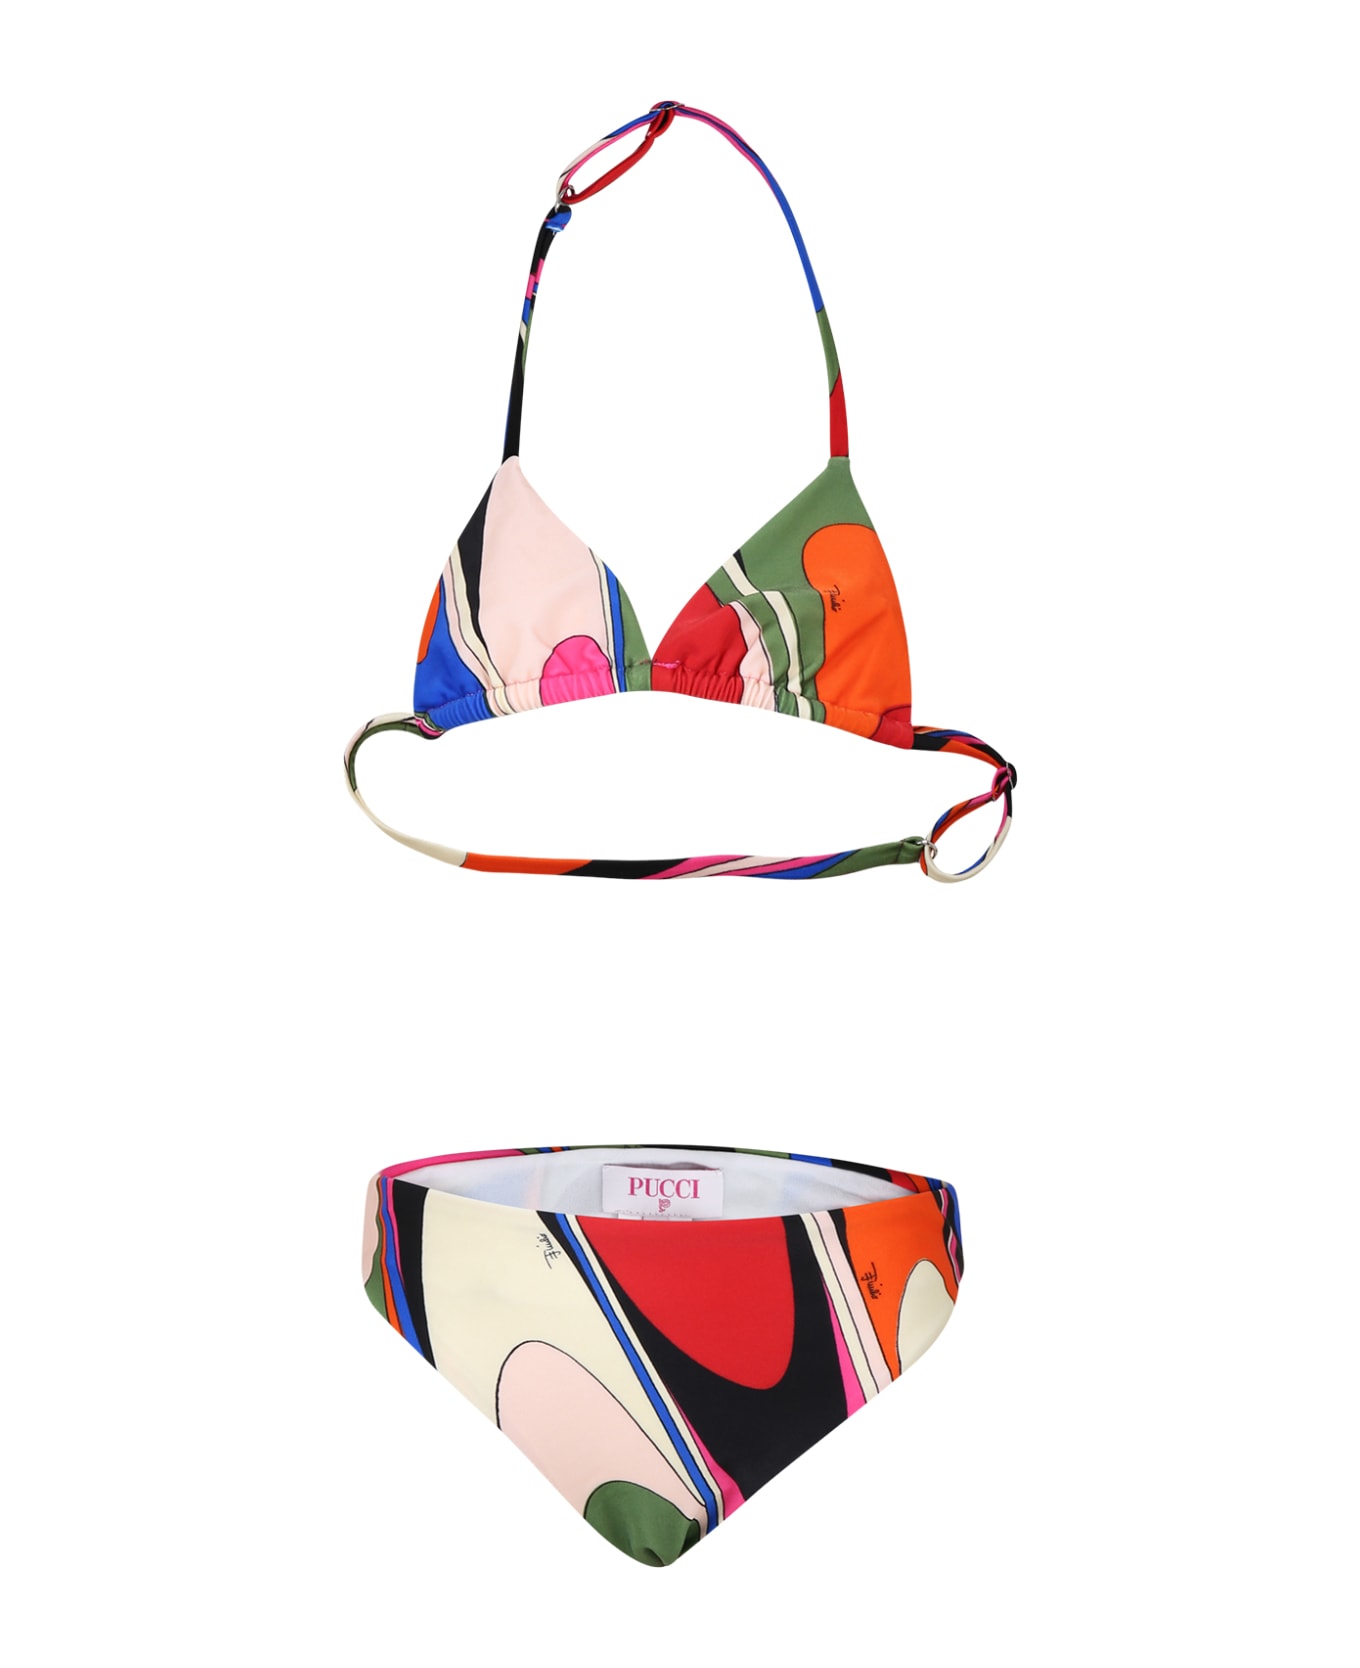 Pucci Multicolor Bikini For Girl With Print And Logo - Multicolor 水着